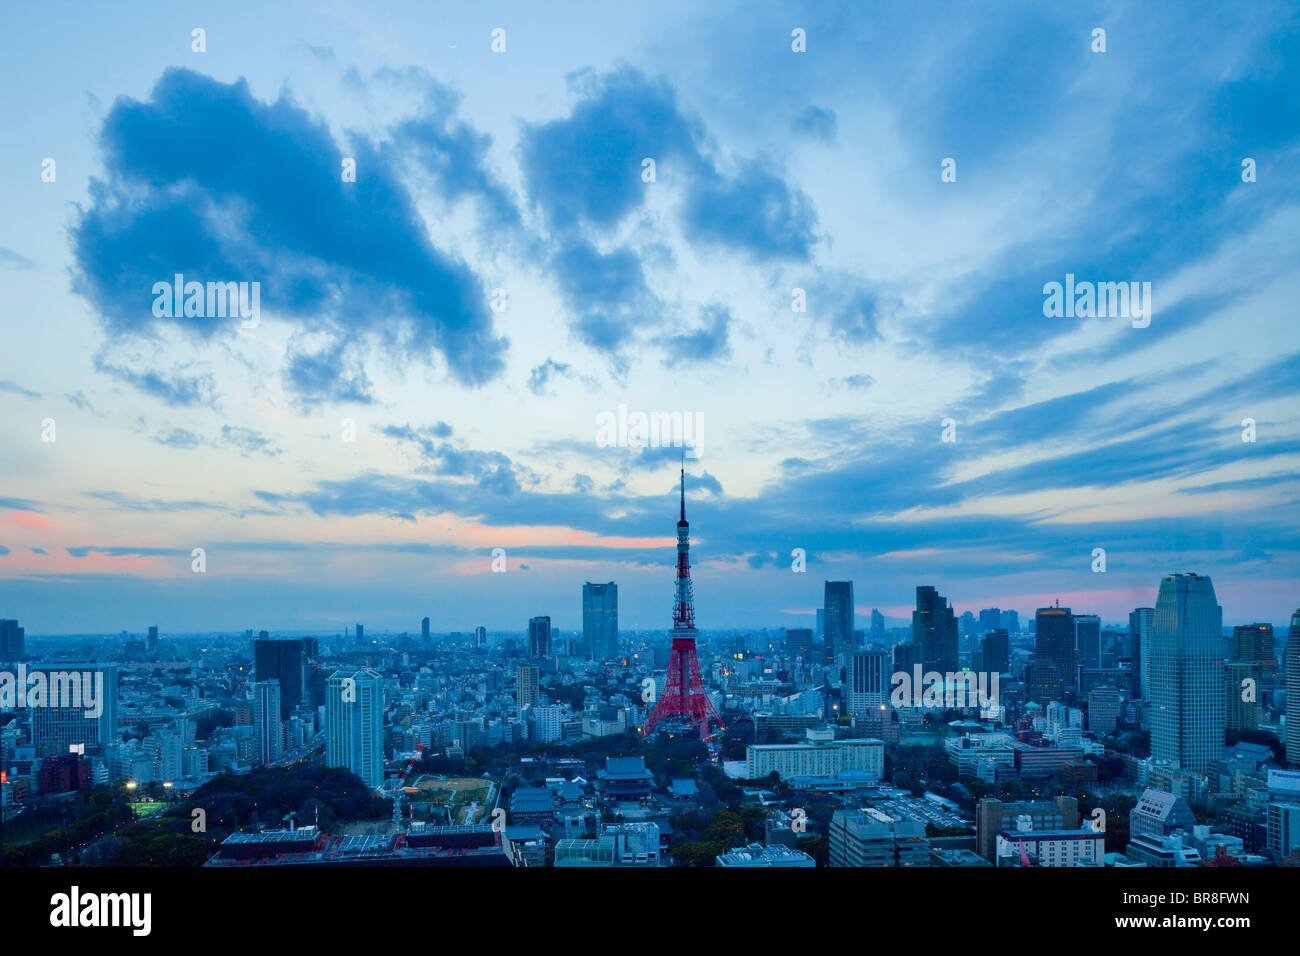 Cityscape of Minato Ward at dusk Stock Photo